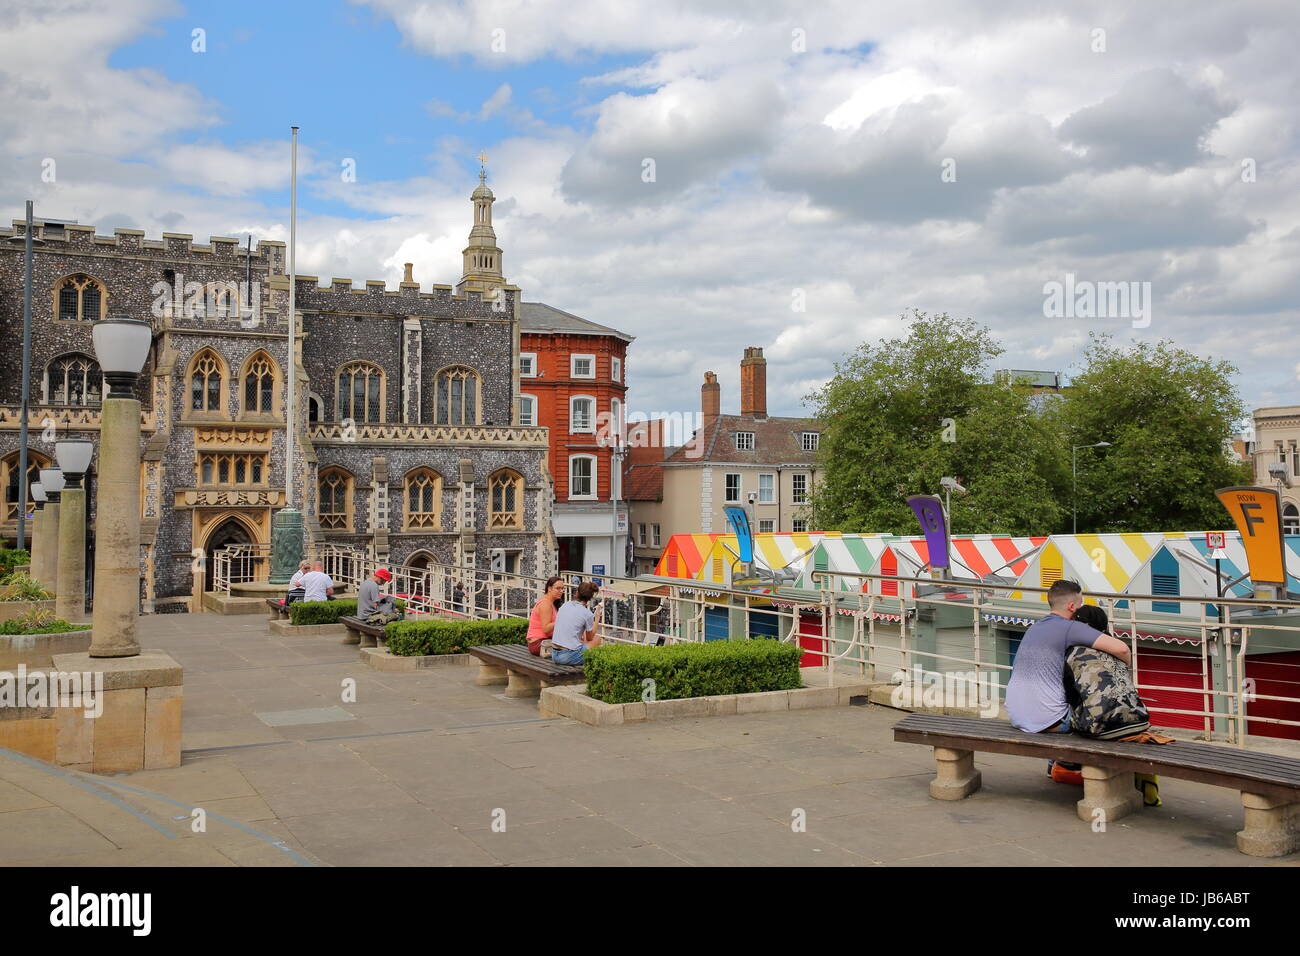 NORWICH, UK - 4. Juni 2017: Menschen entspannen bei Memorial Gardens mit Blick auf bunte Marktstände und das Rathaus im Hintergrund Stockfoto